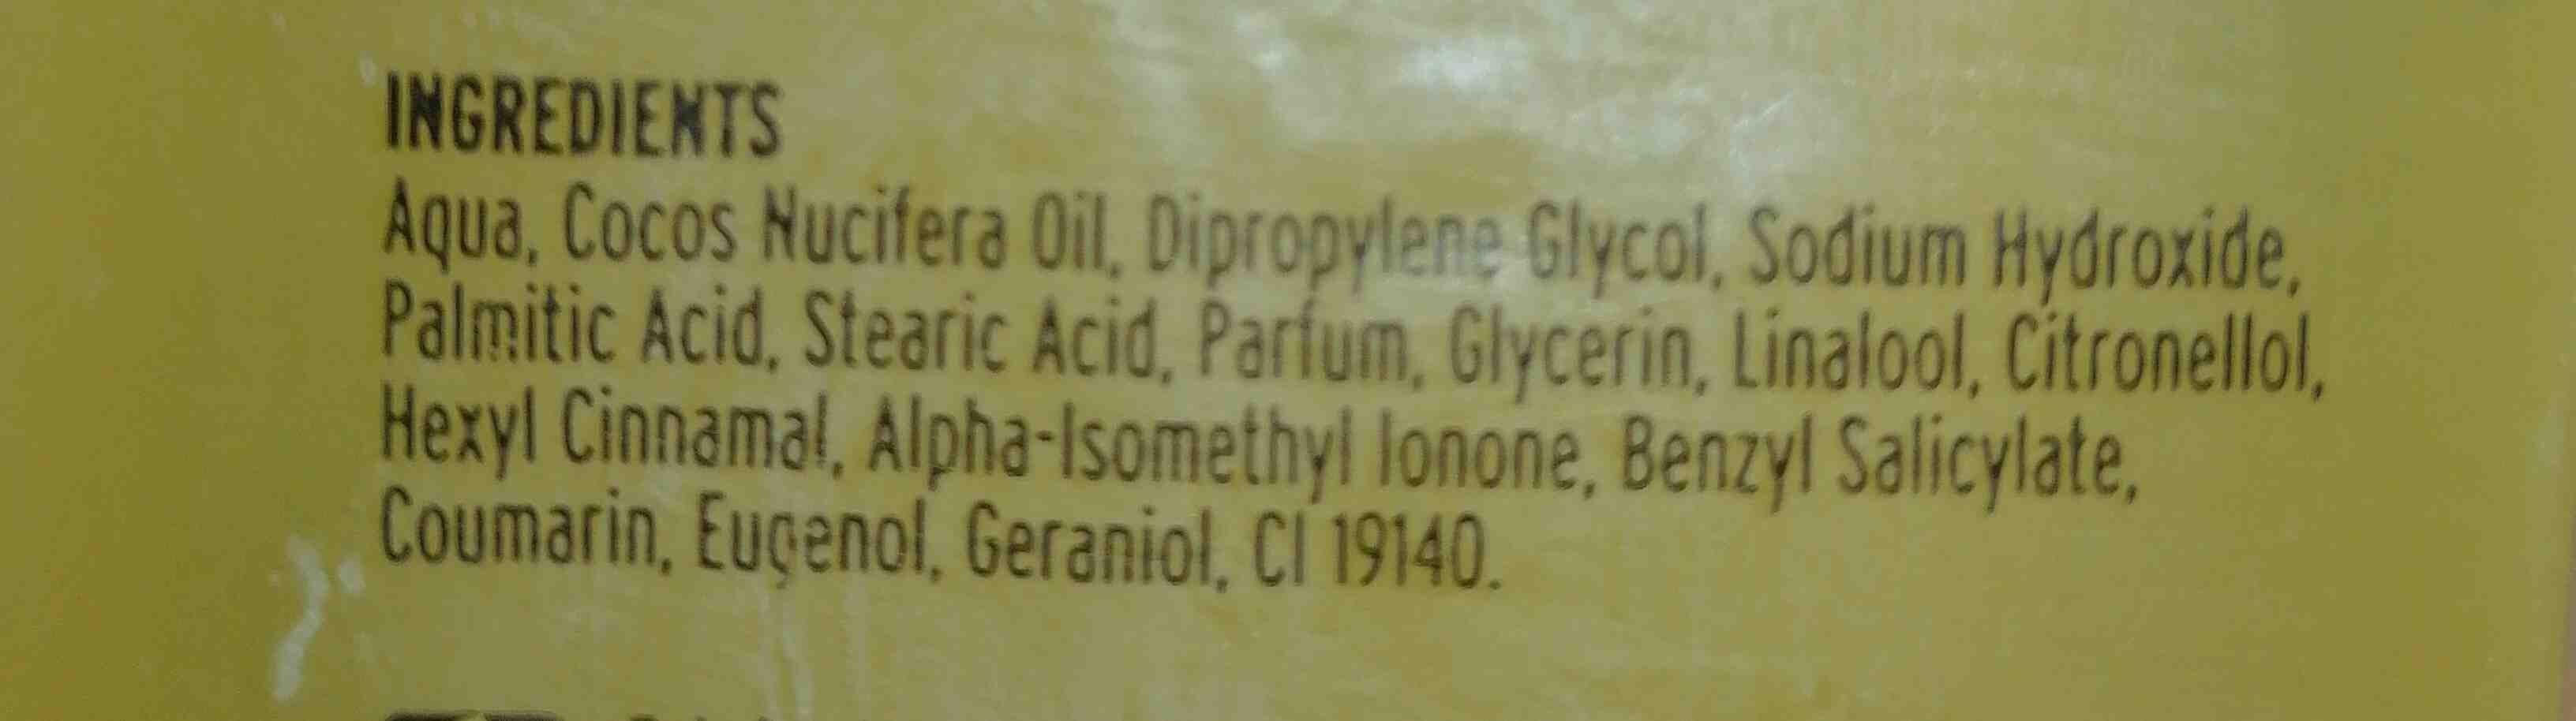 Belle glicerina jabon - Ingrédients - en